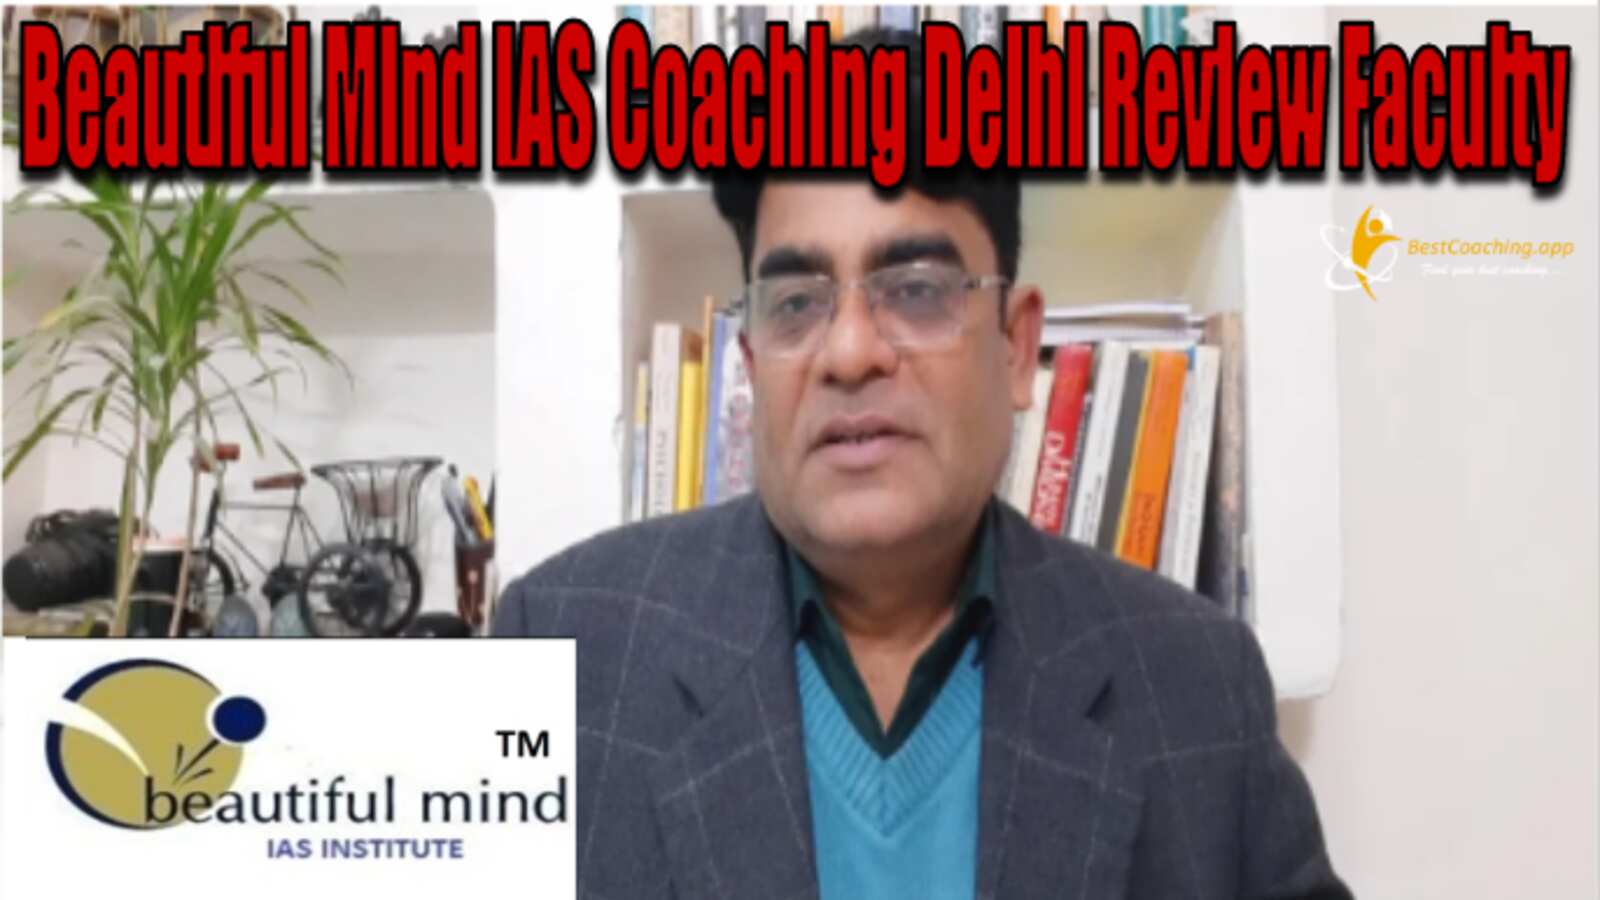 Beautiful Mind IAS Coaching Delhi Faculty